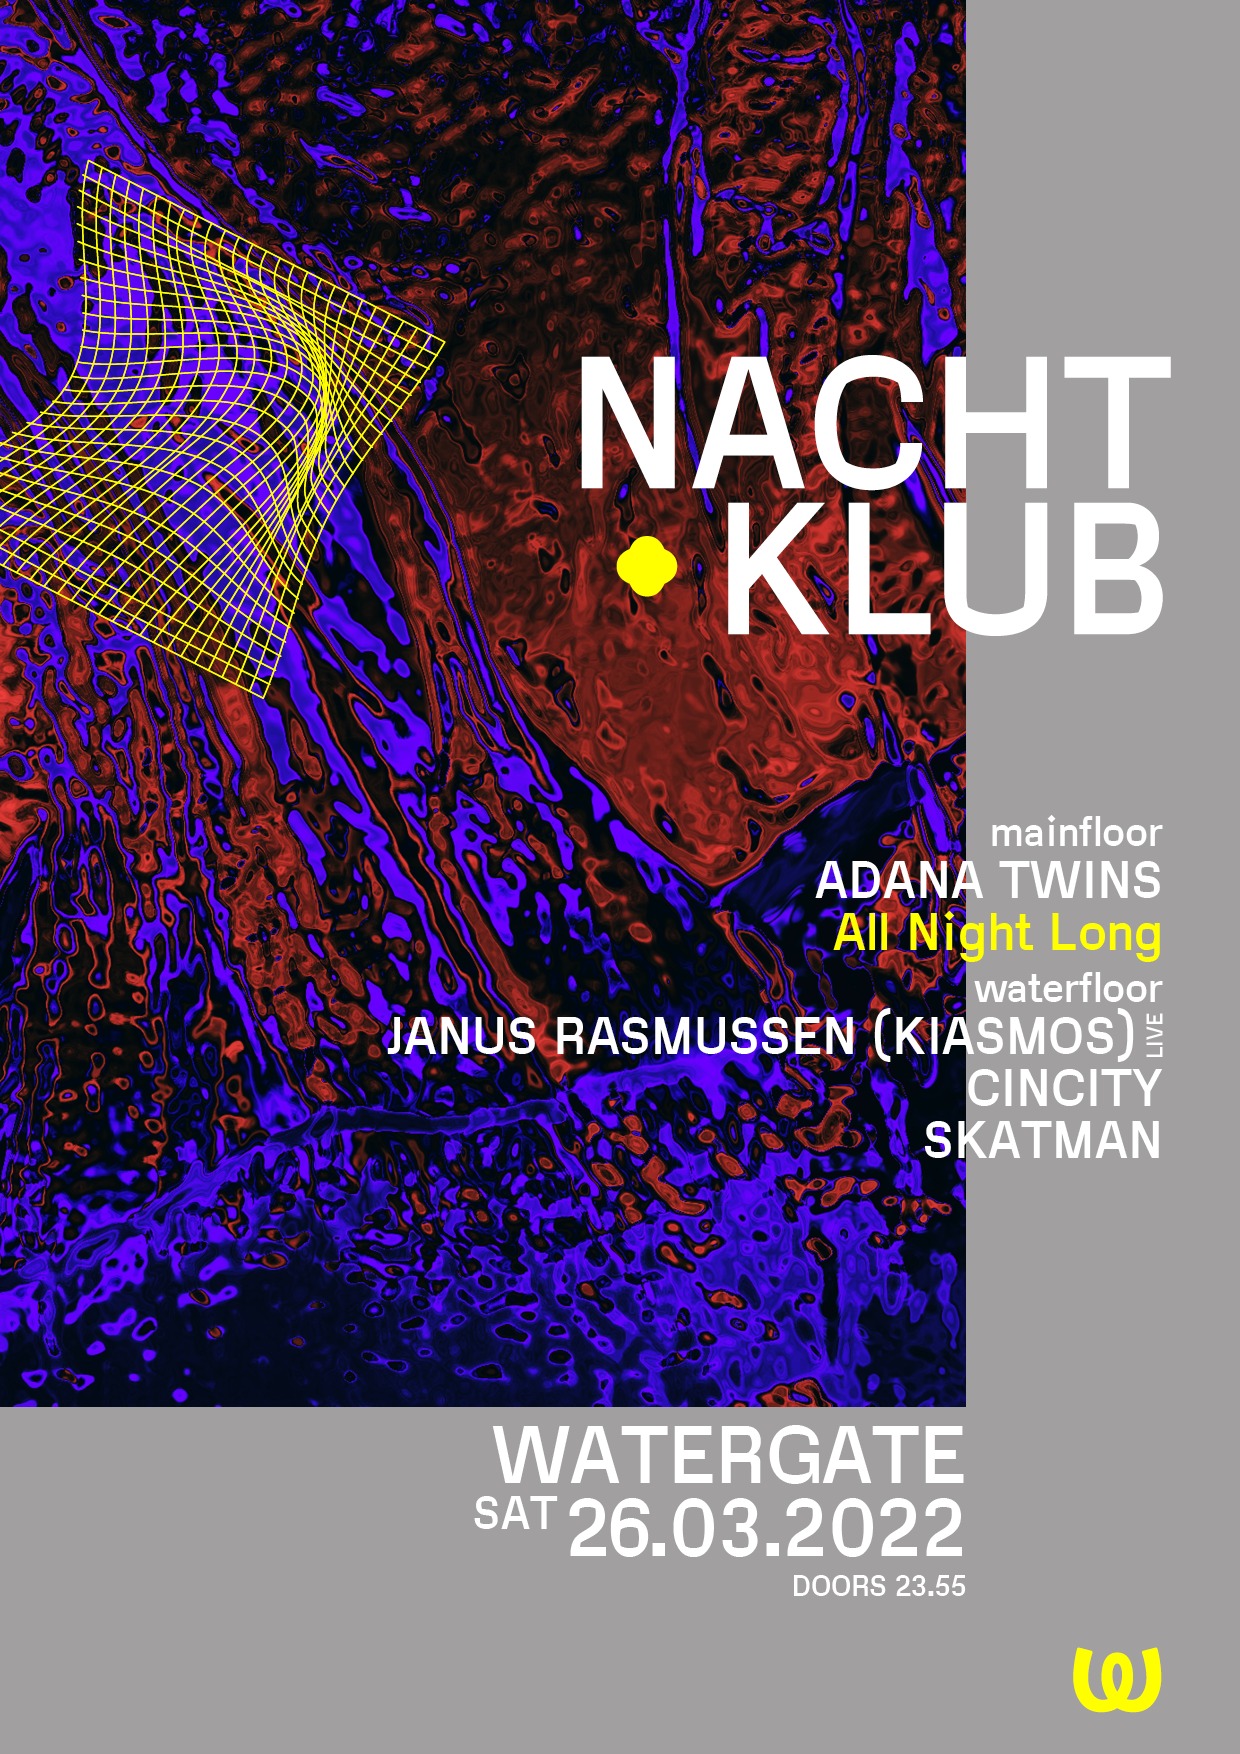 Nachtklub: Adana Twins, Janus Rasmussen (Kiasmos), Cincity, Skatman - フライヤー表